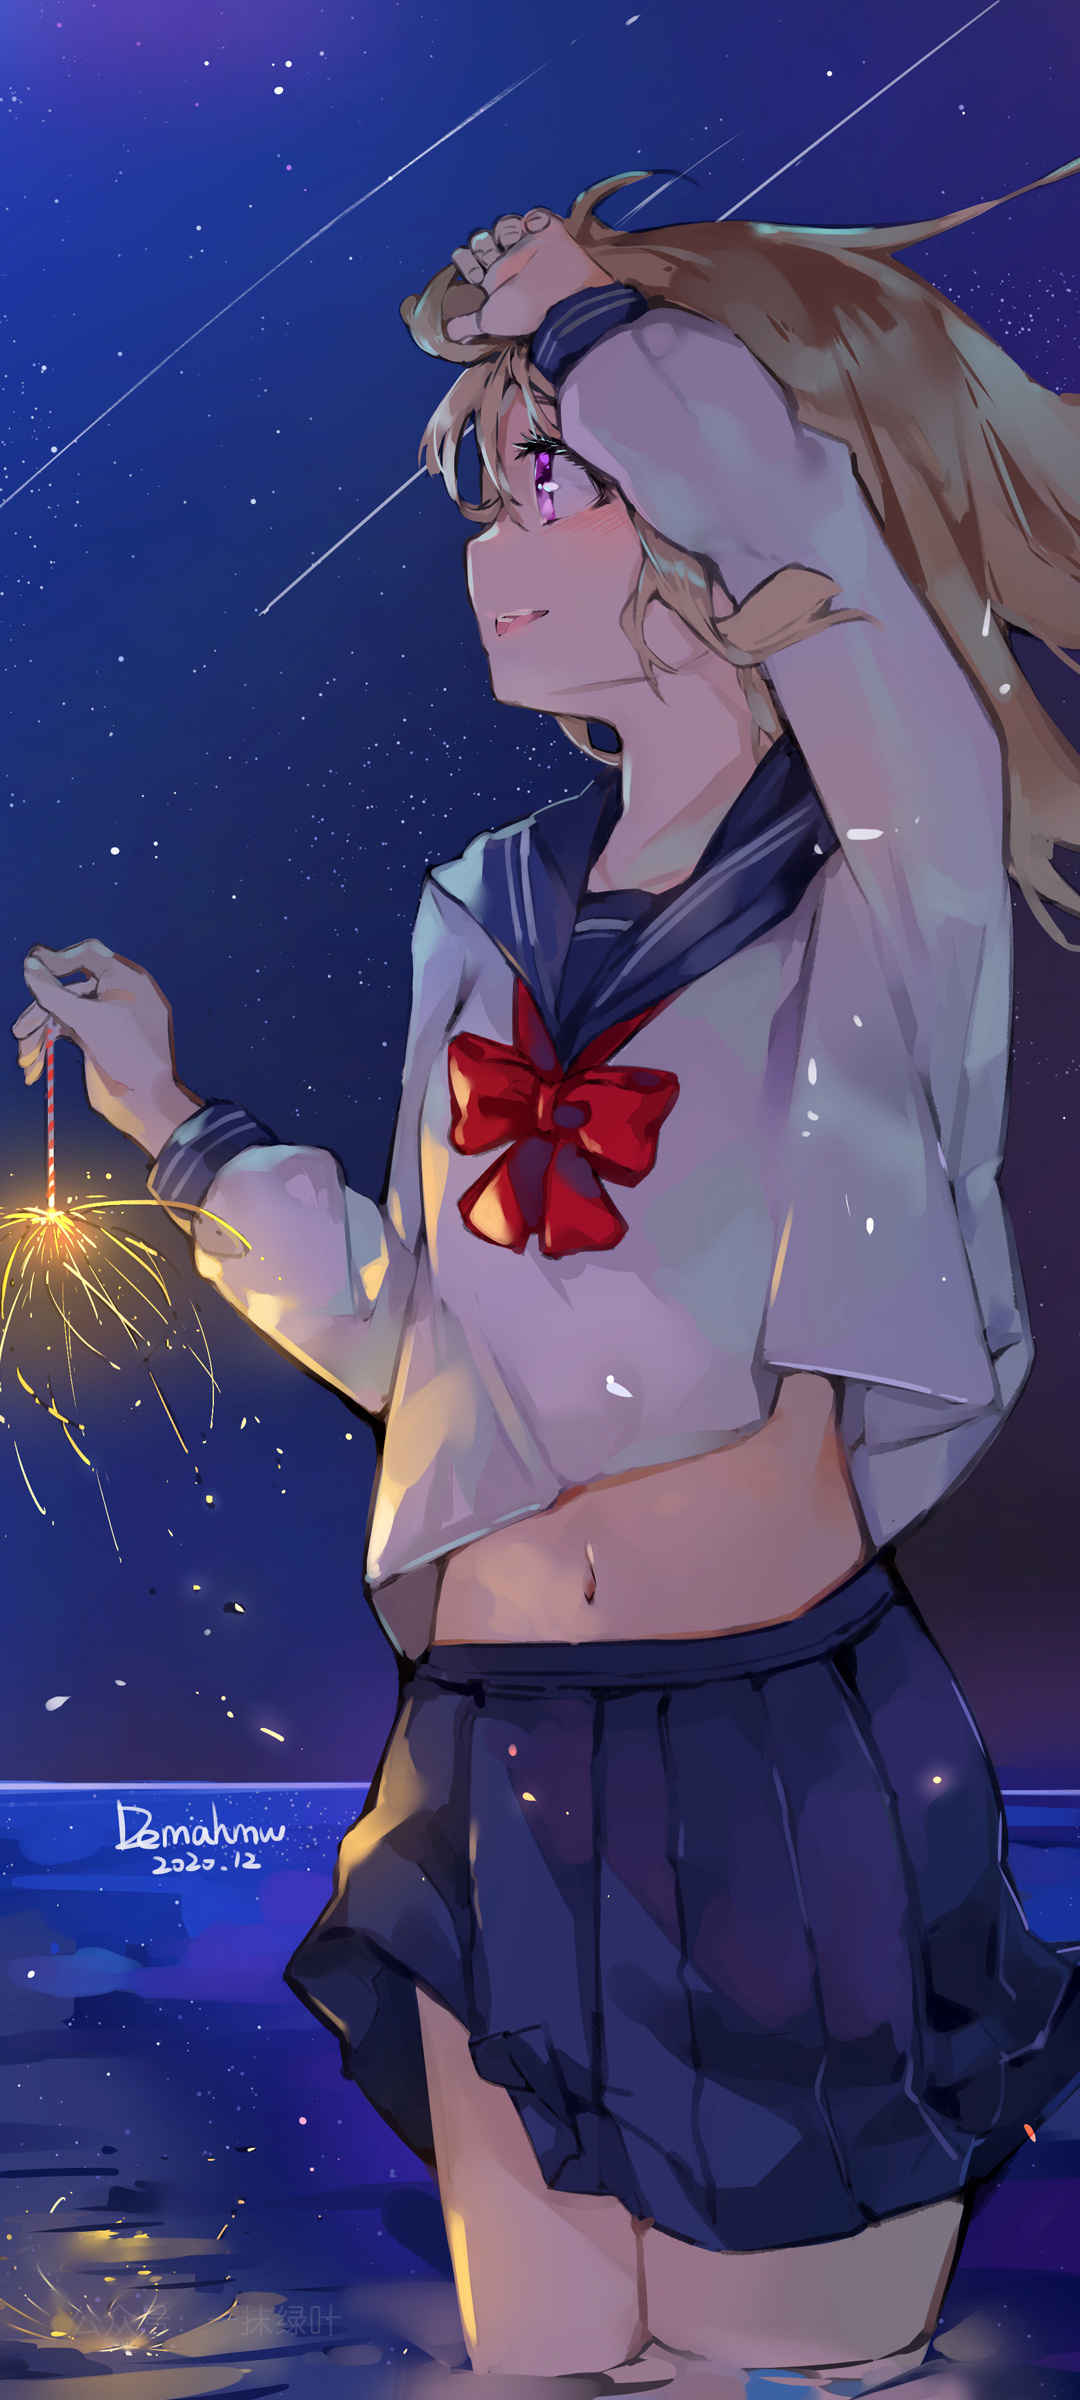 星空 少女 水手服 风景 夜空 动漫全面屏手机壁纸